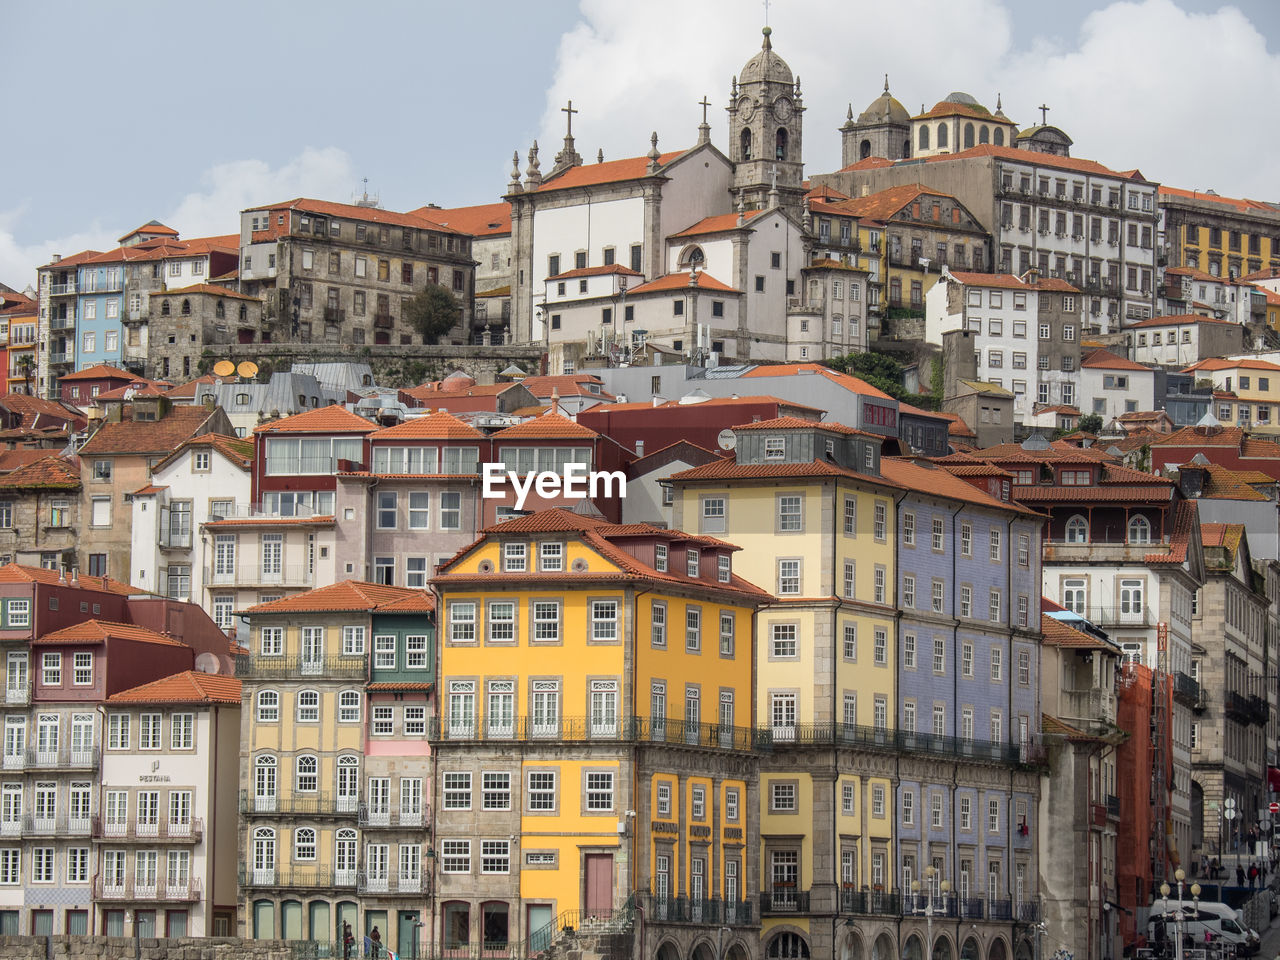 Porto and the douro river